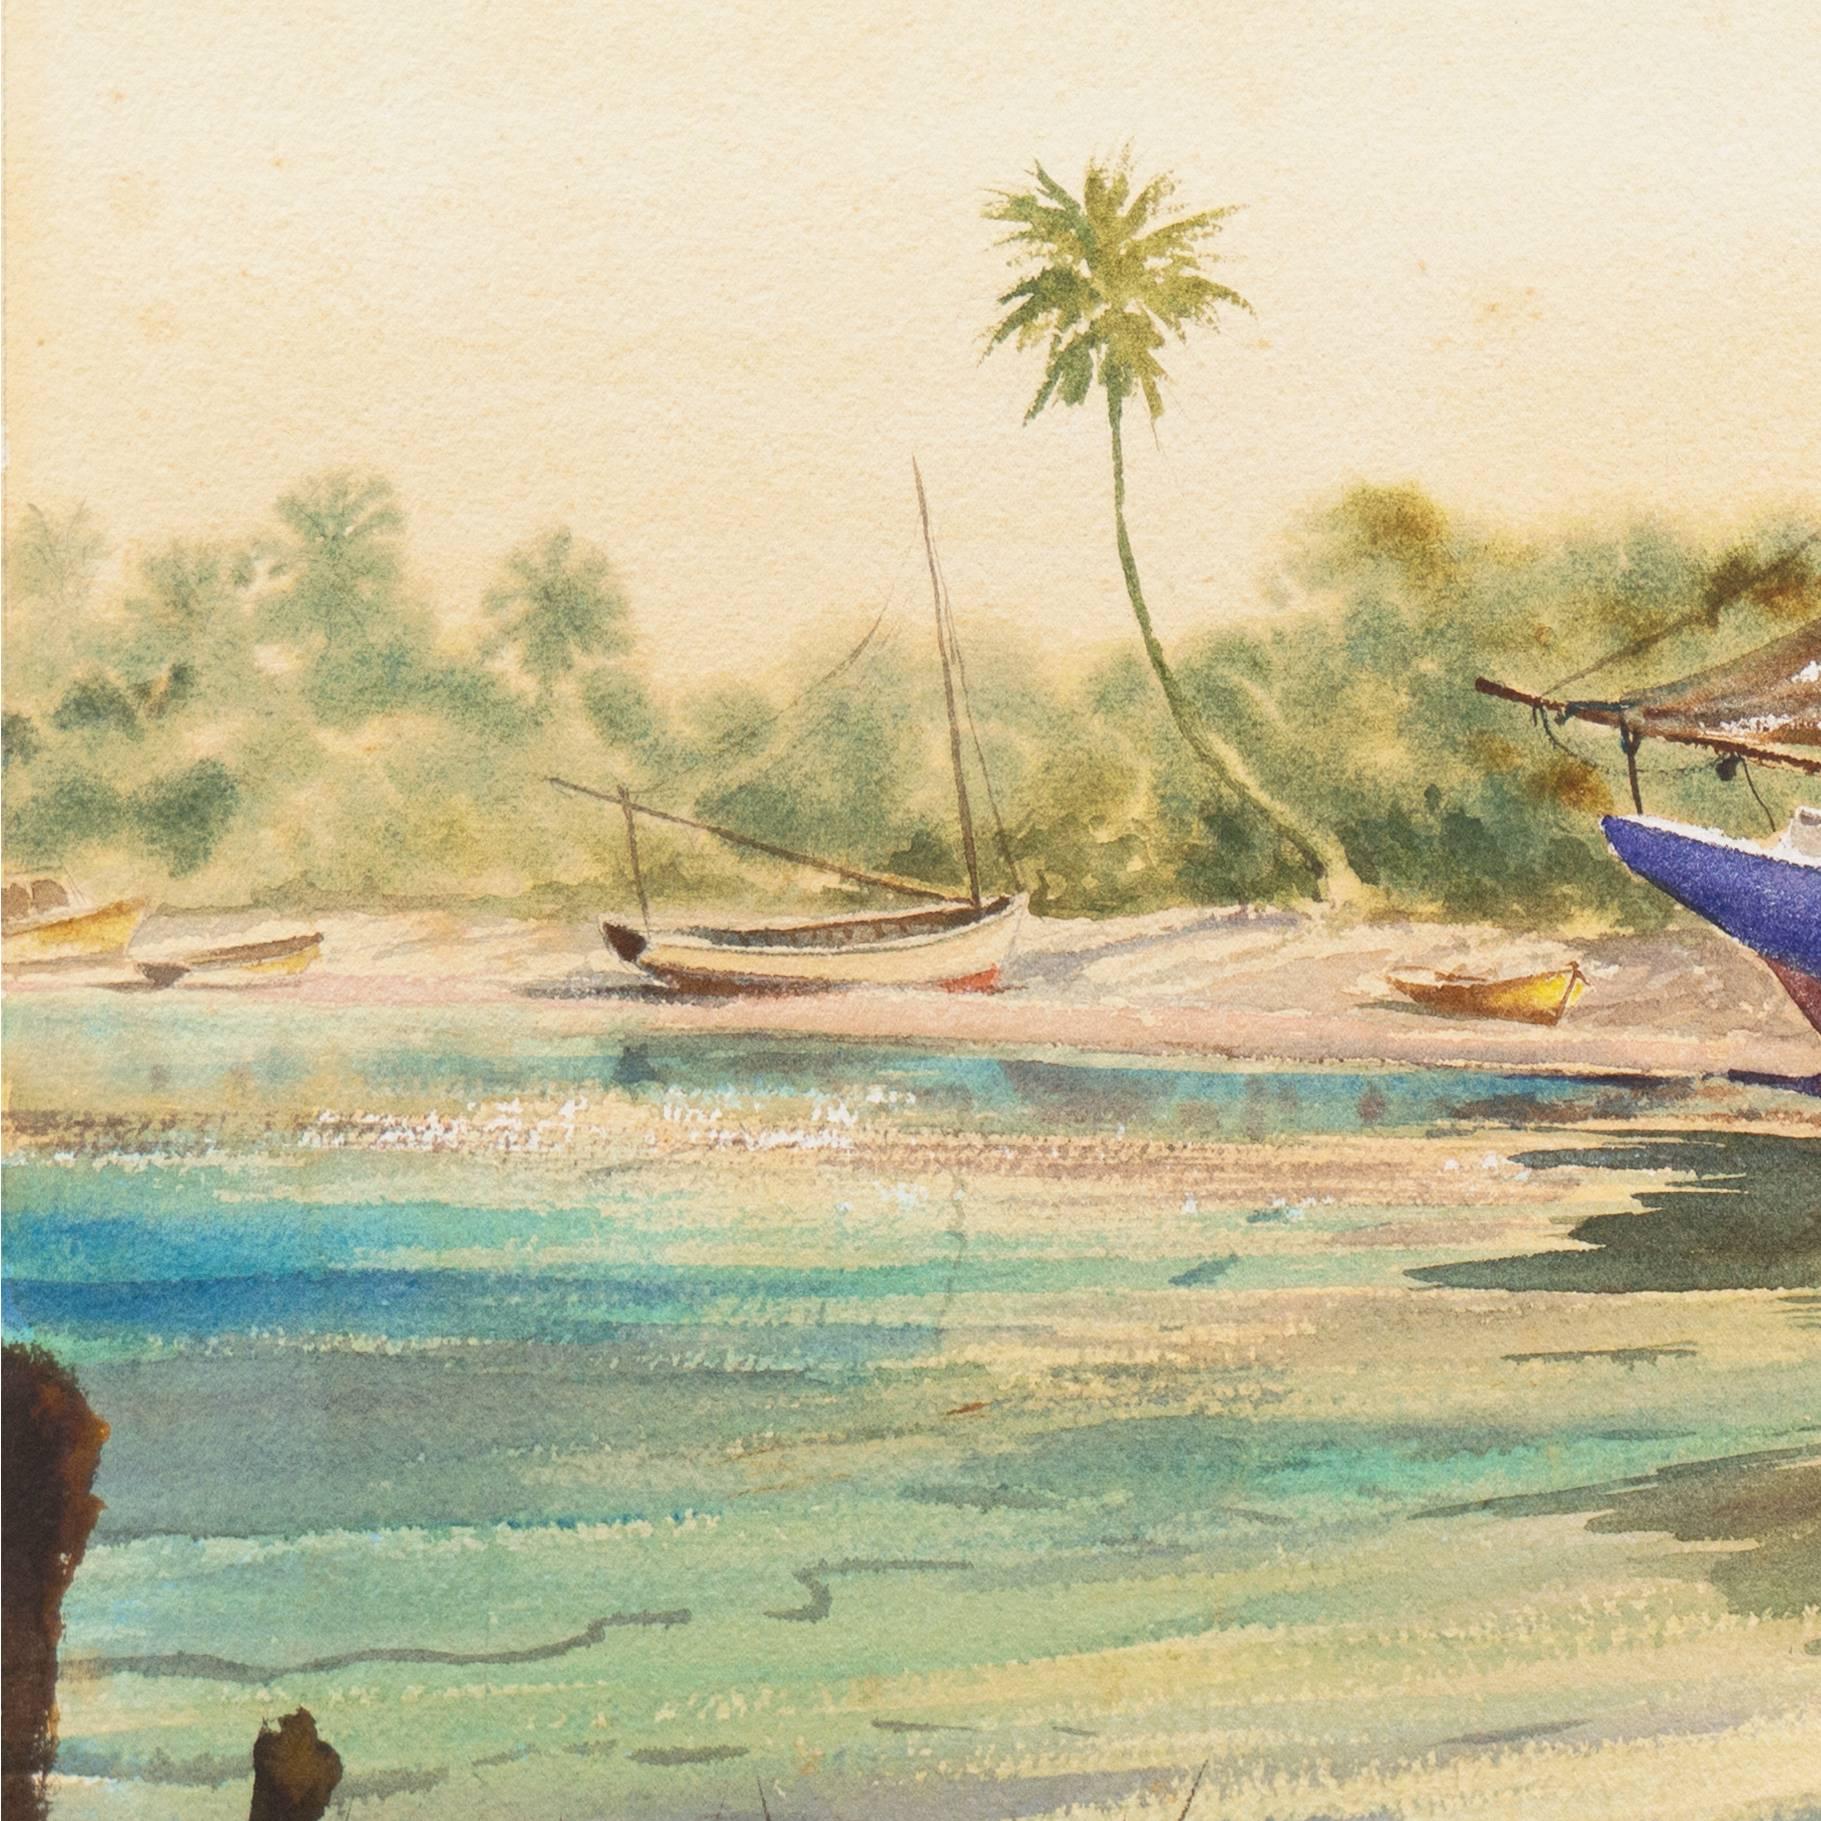 Das Aquarell zeigt den Blick auf eine ruhige Bucht in Florida mit Segelbooten:: die im Sand ruhen:: und einem Mann und einem Jungen in zinnoberroten Hemden:: die sich im Schatten üppiger grüner Palmen dem Ufer nähern.

Unten rechts signiert 